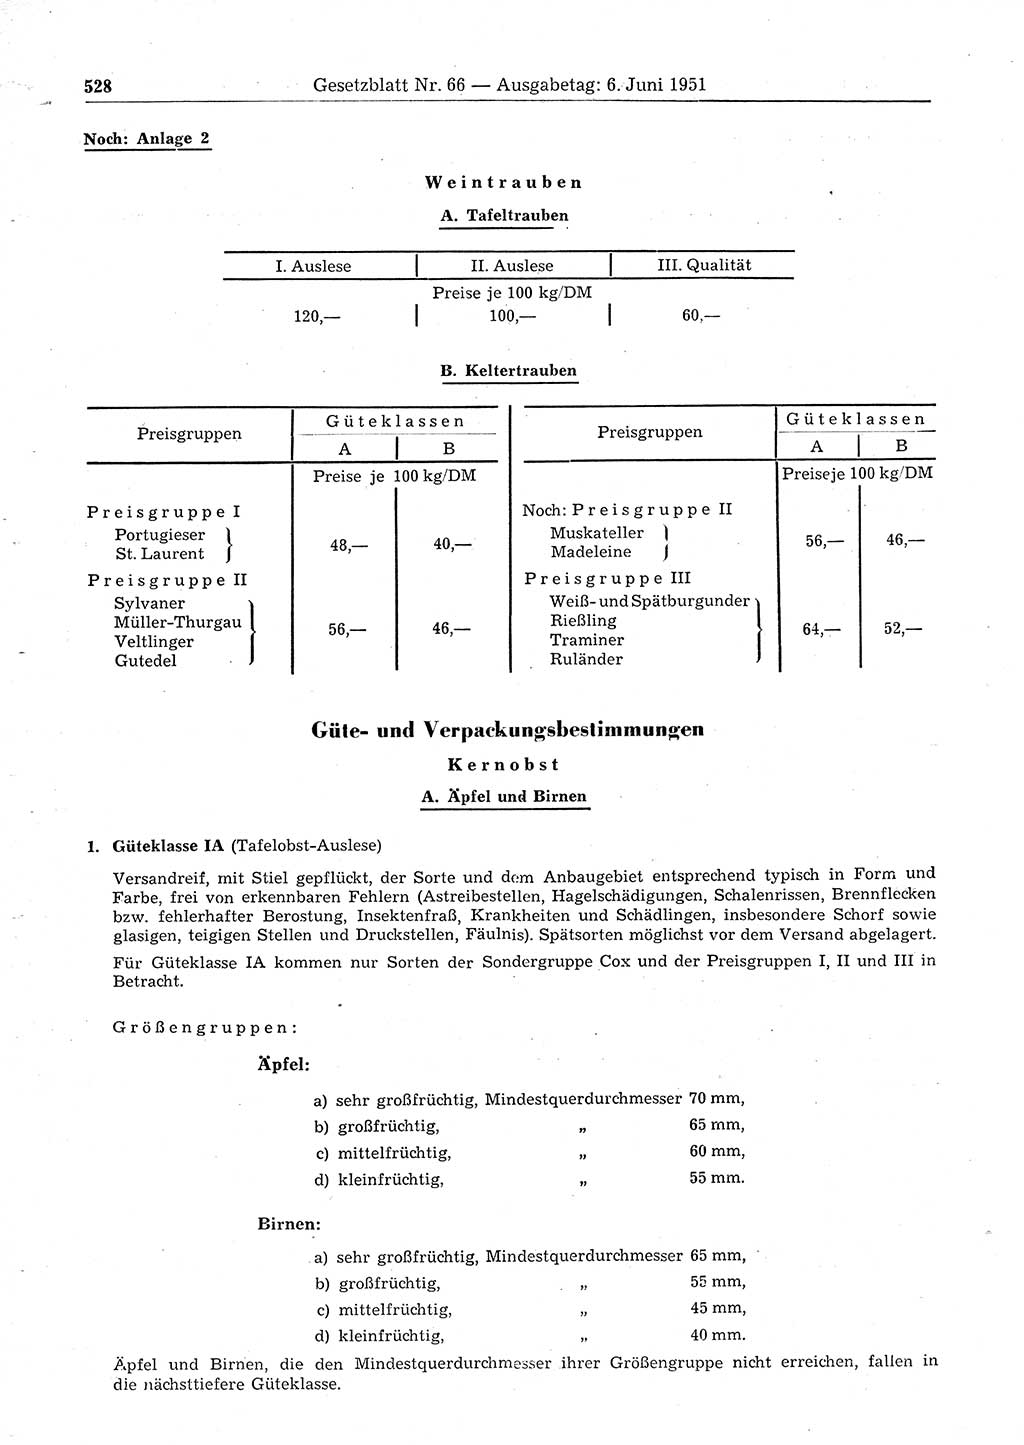 Gesetzblatt (GBl.) der Deutschen Demokratischen Republik (DDR) 1951, Seite 528 (GBl. DDR 1951, S. 528)